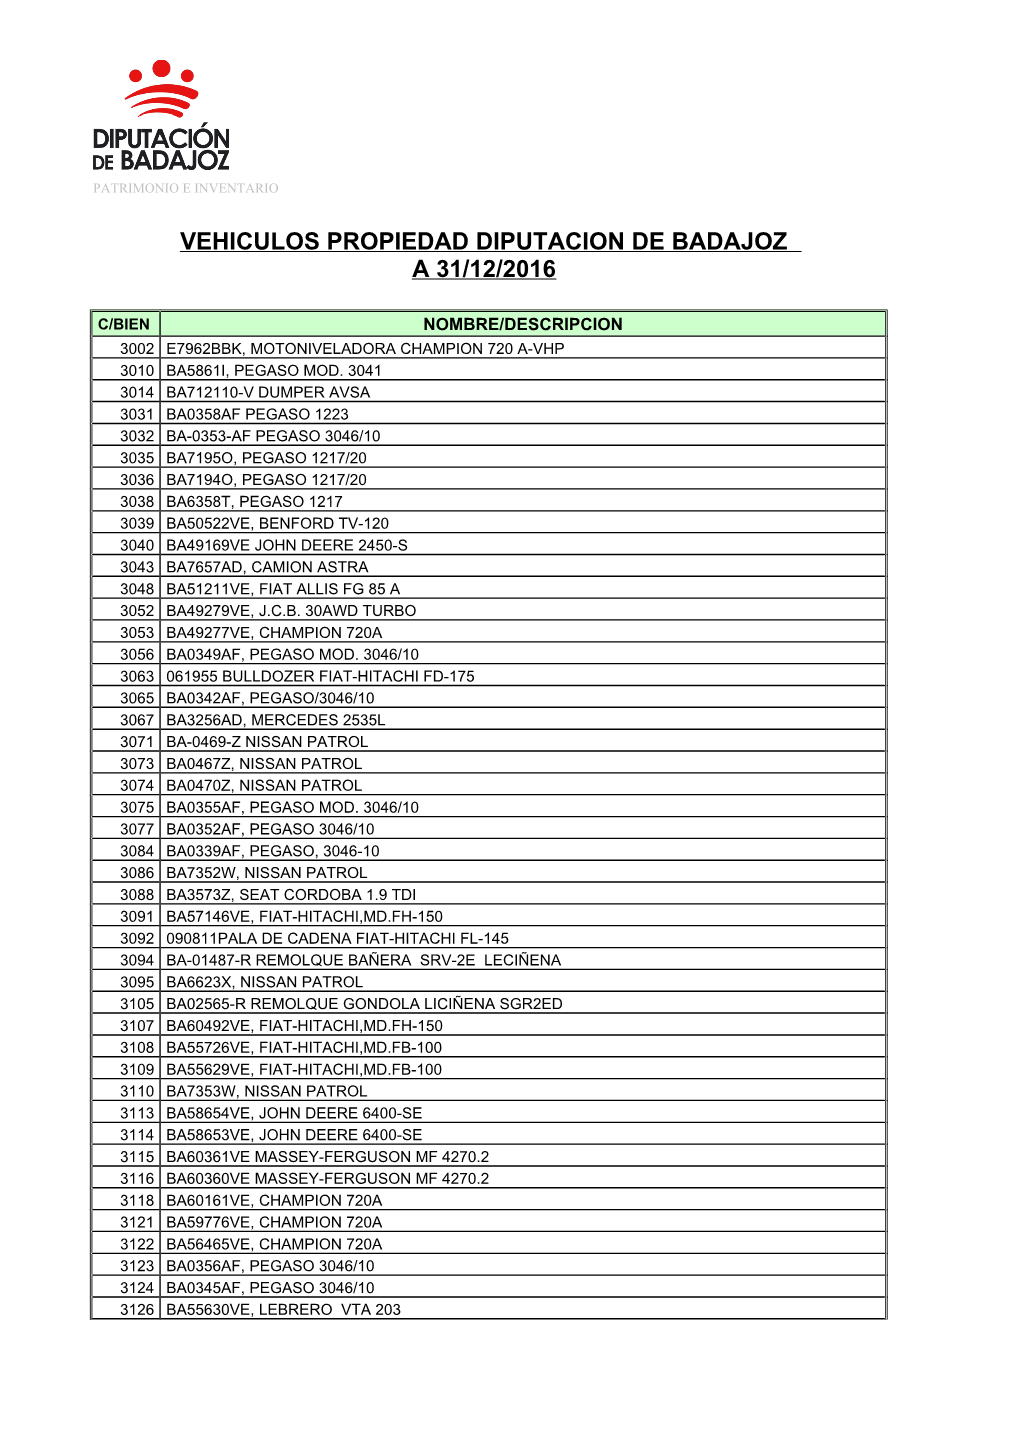 Vehiculos Propiedad Diputacion De Badajoz a 31/12/2016